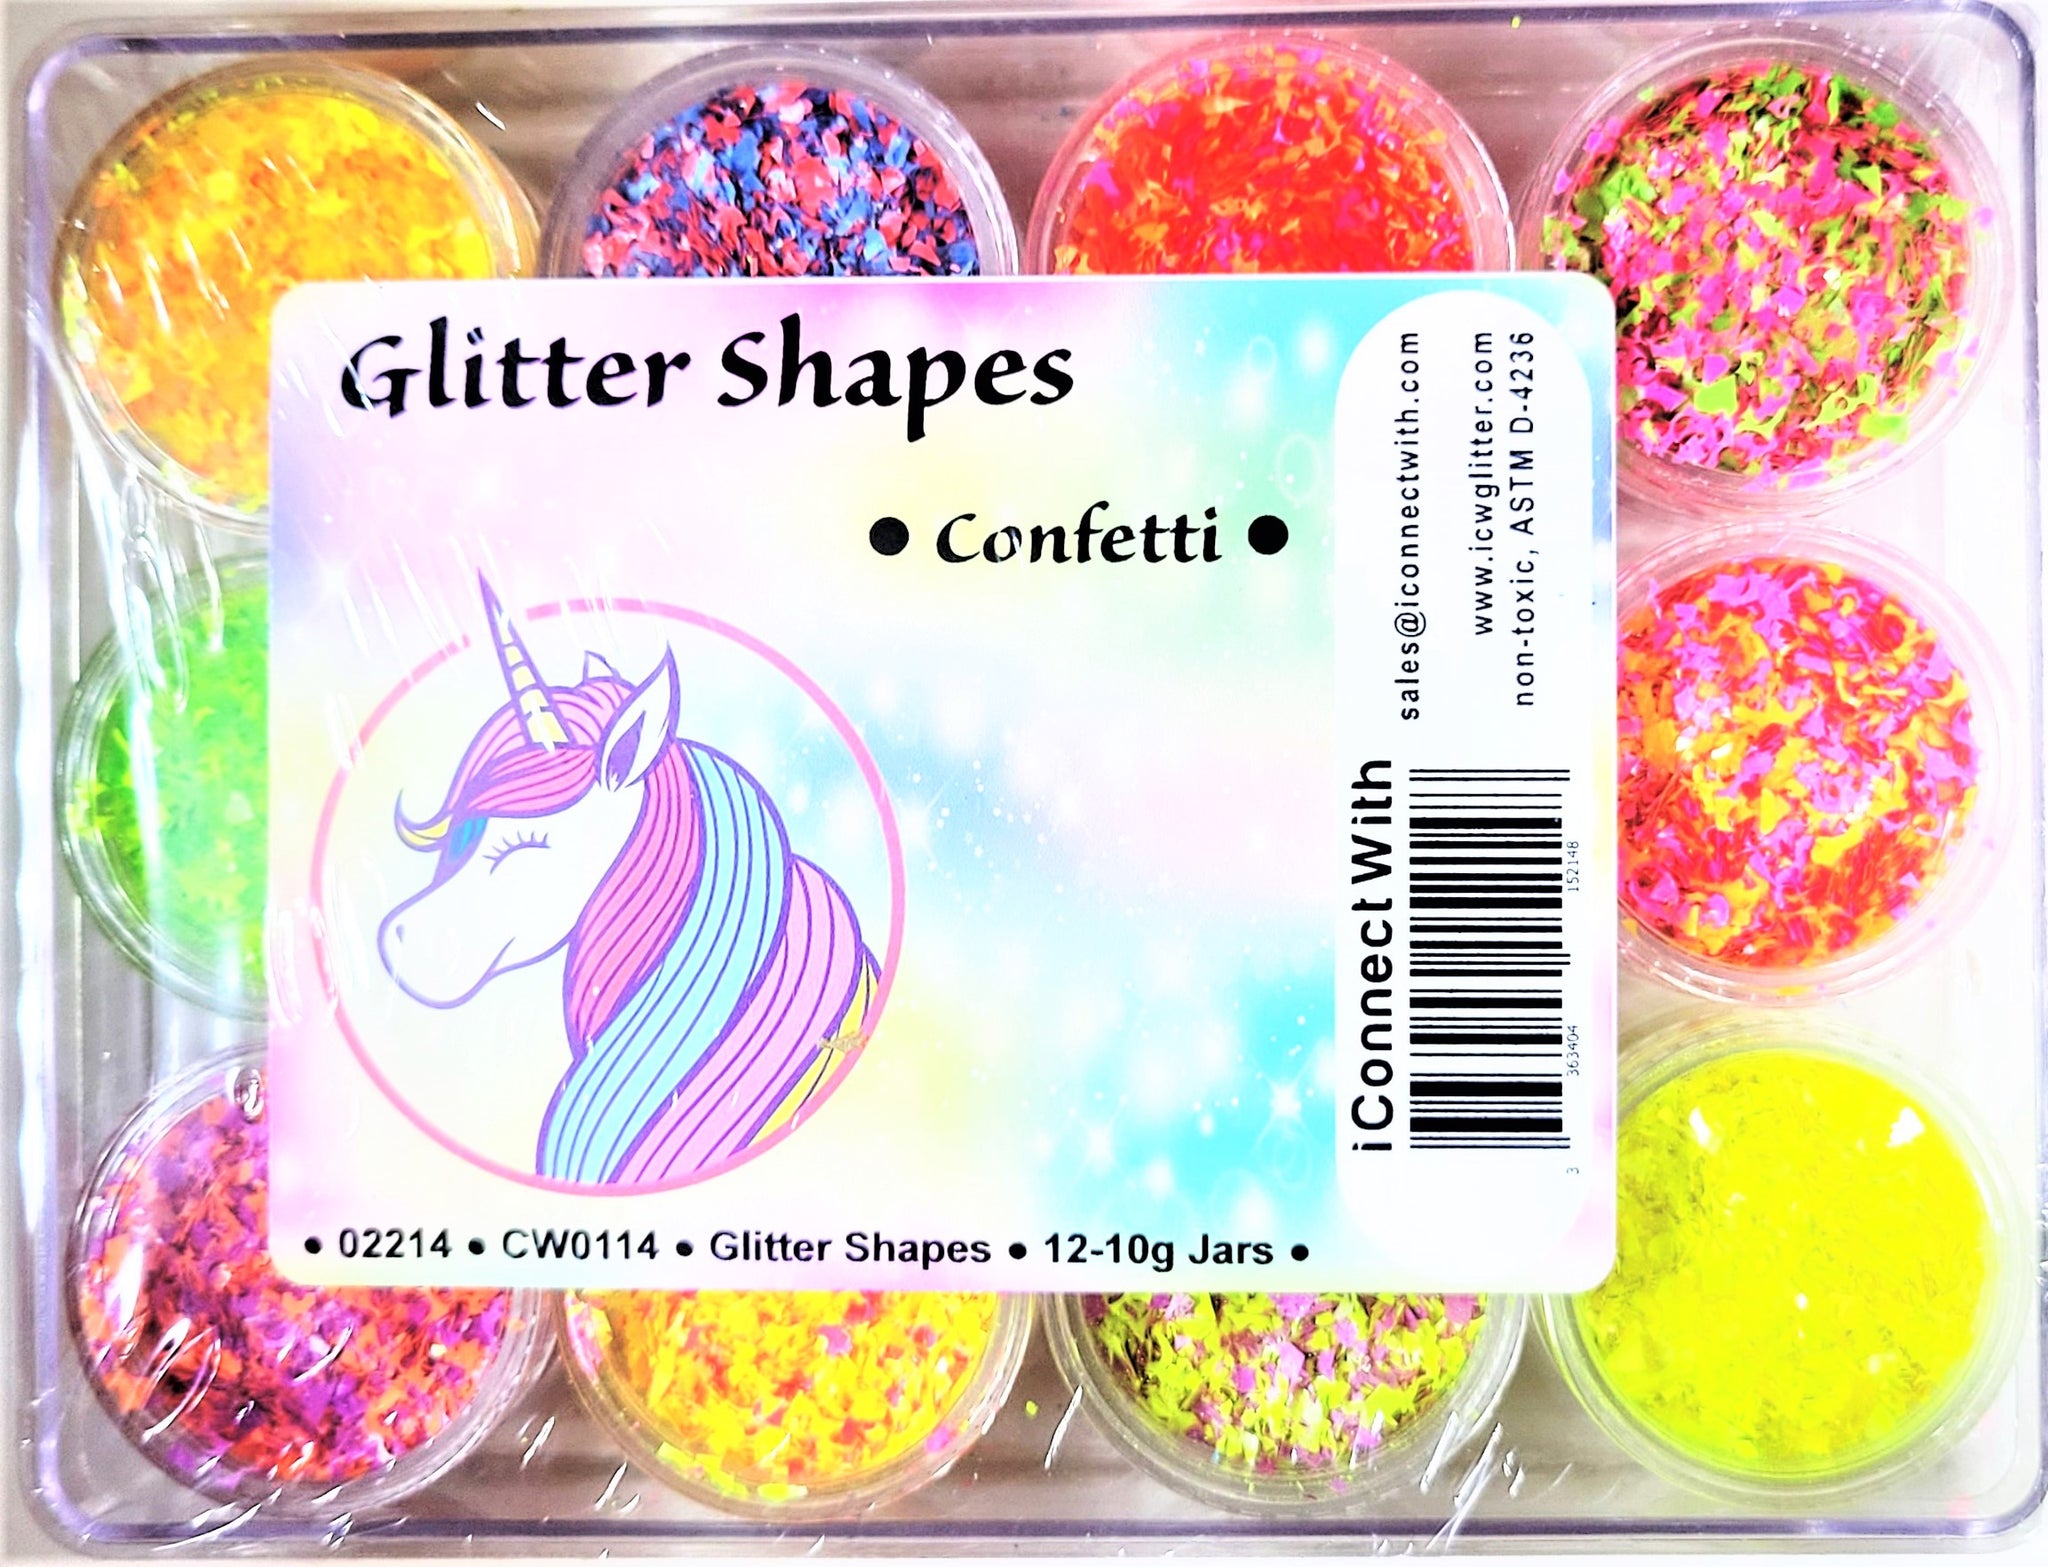 Glitter Shapes - Multicolor Confetti Shapes Kit